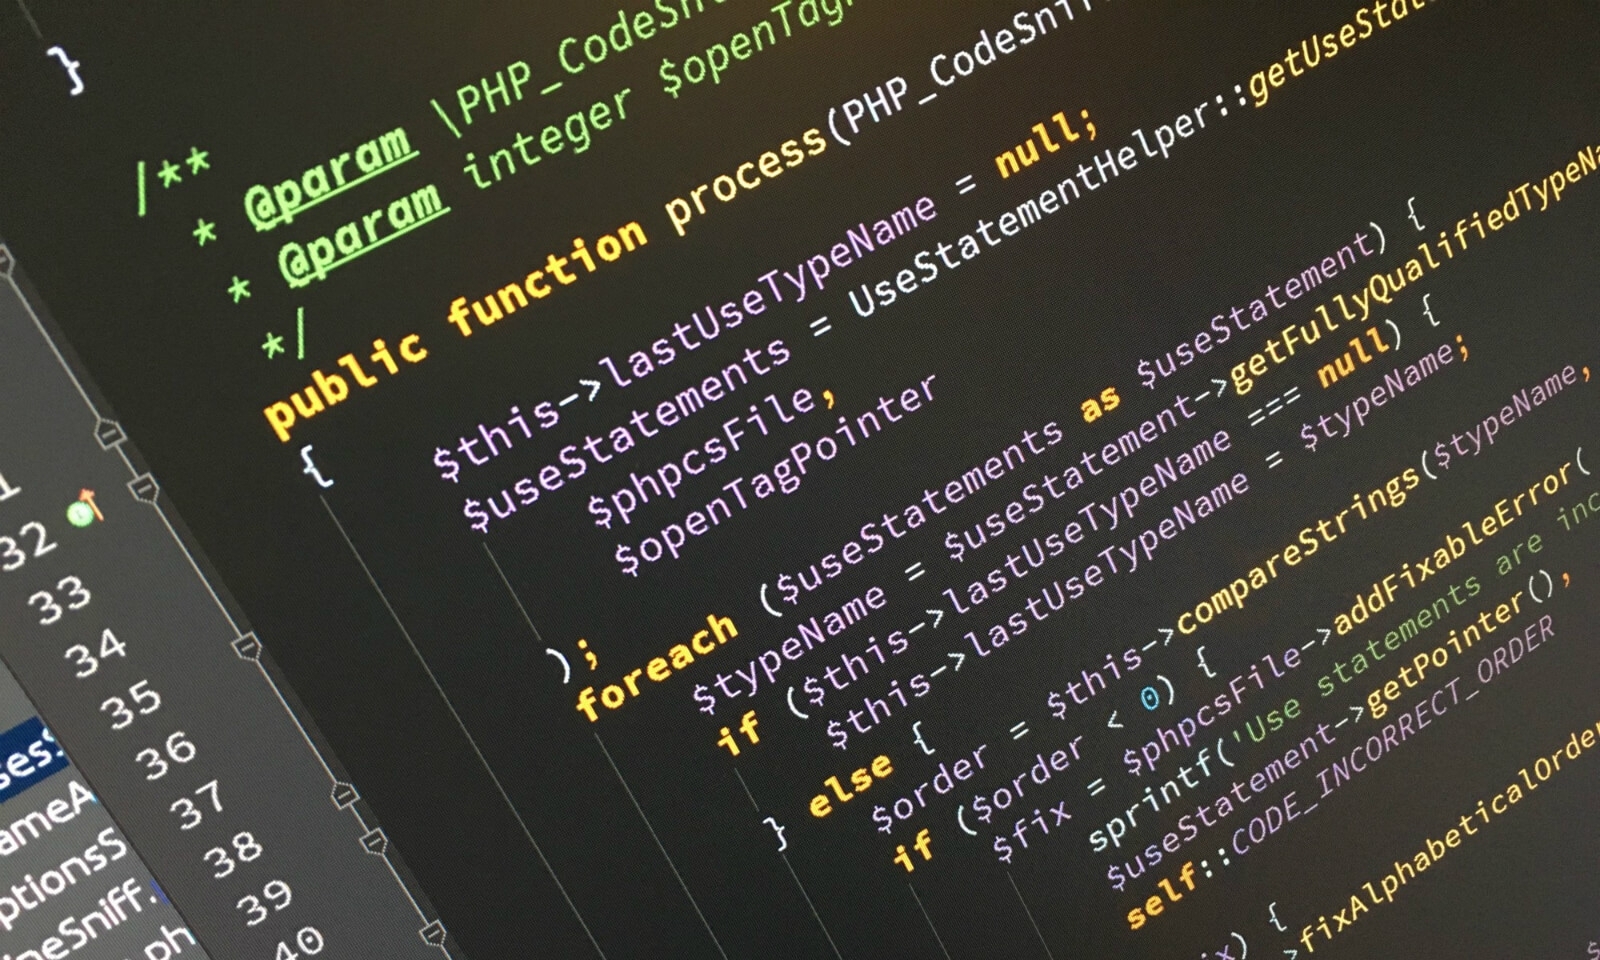 Коды хороших сайтов. Код программирования. Код программиста. Код программы. Программист код программы.